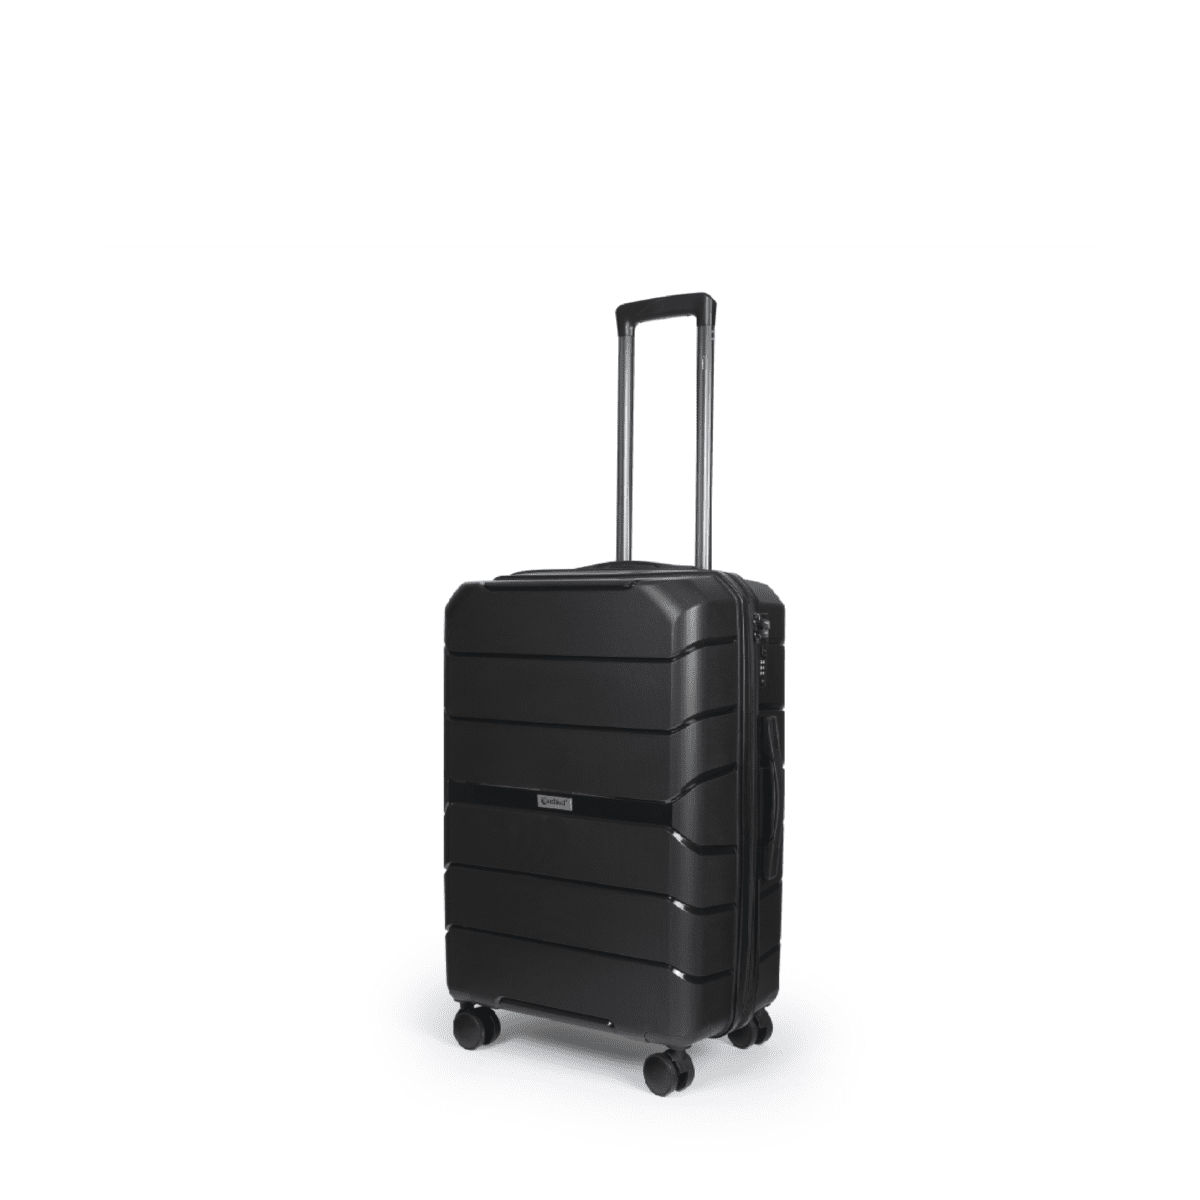 Βαλίτσα χειραποσκευή με tsa lock διπλά ροδάκια από πολυπροπυλένιο άθραυστο υλικό και επέκταση σε μαύρα χρώμα